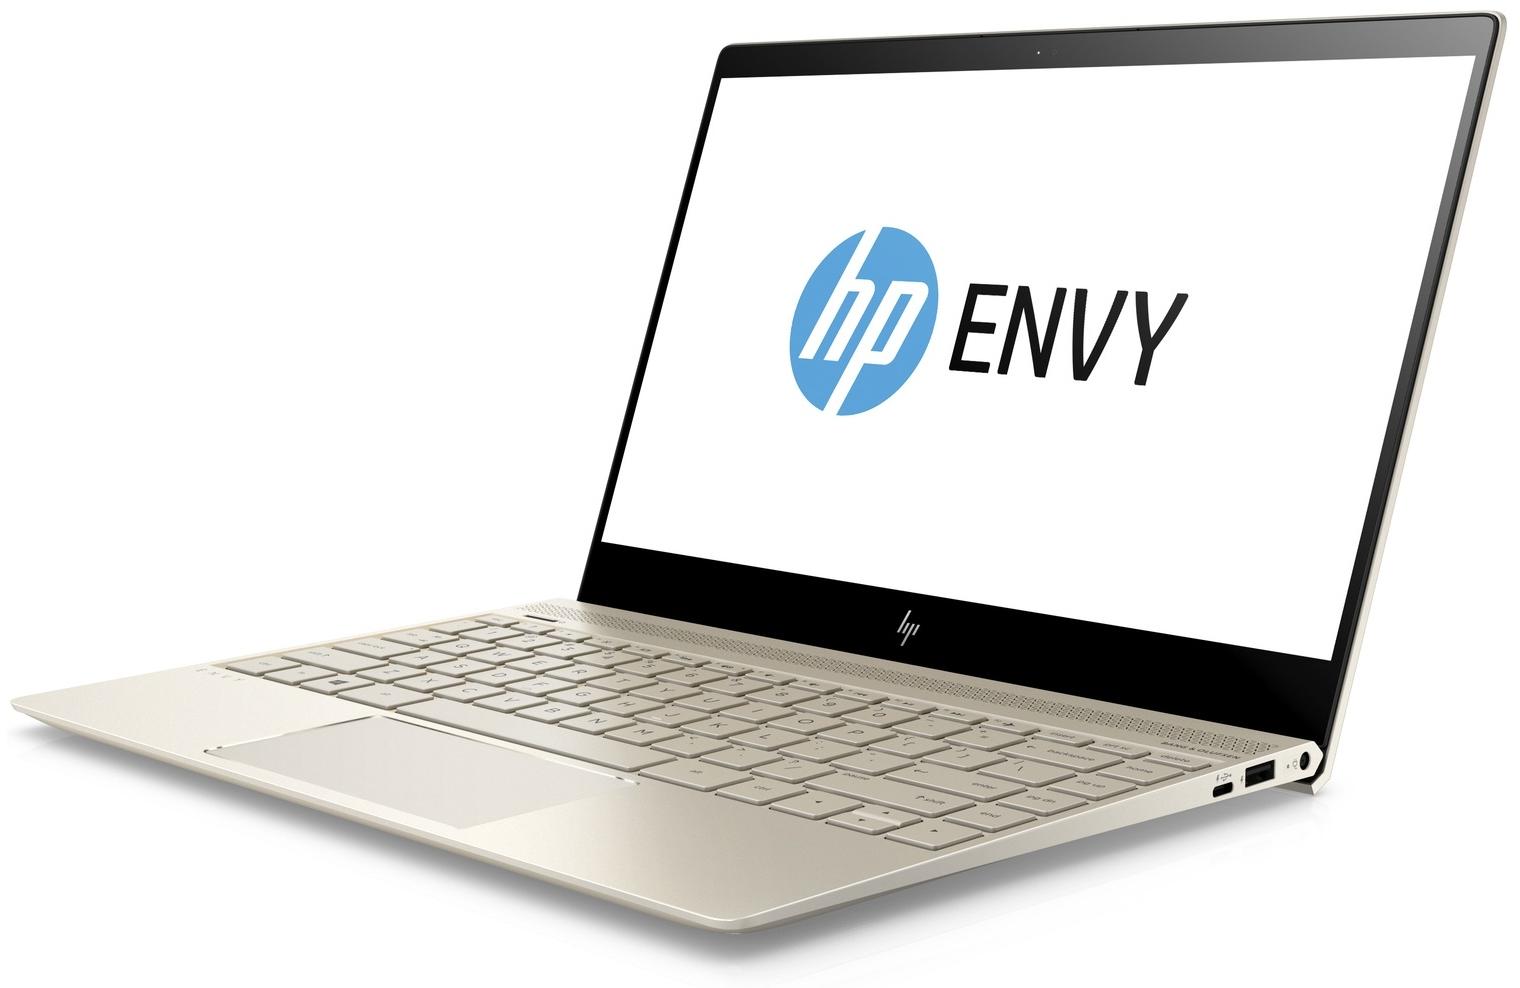   HP Envy 13-ah0011ur (4GZ01EA)  1